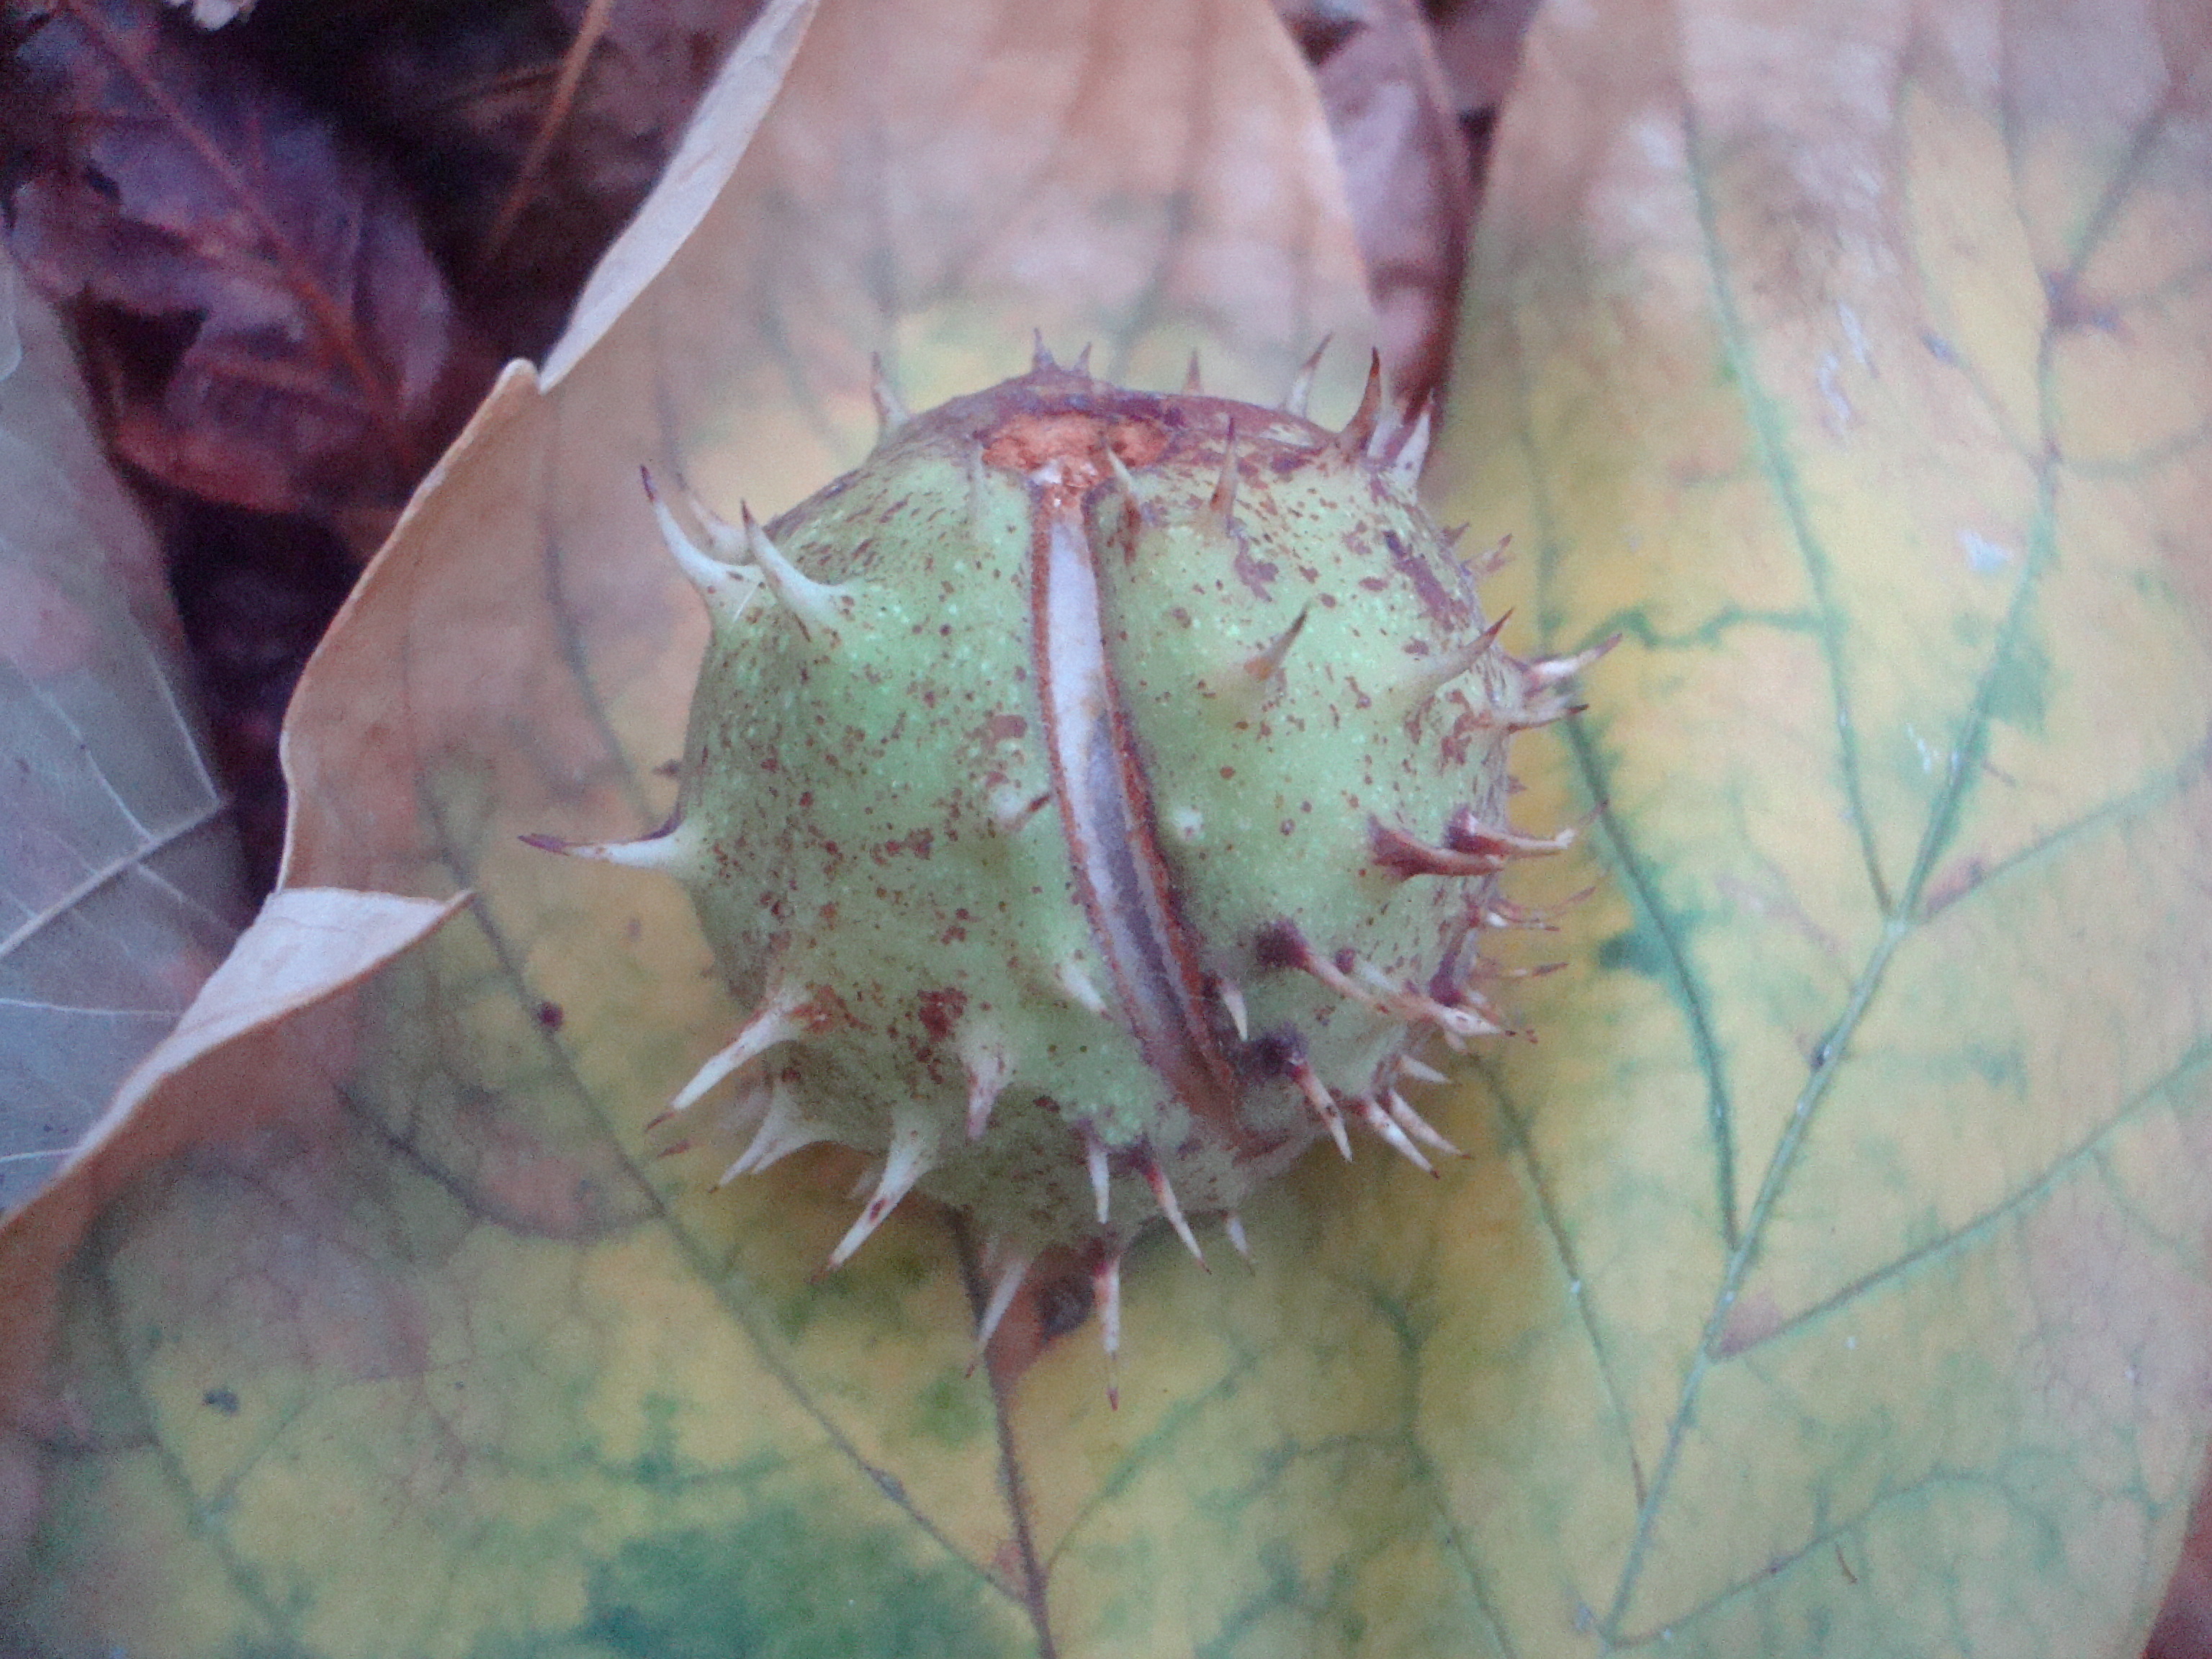 Chestnut on fallen autumn leaves photo